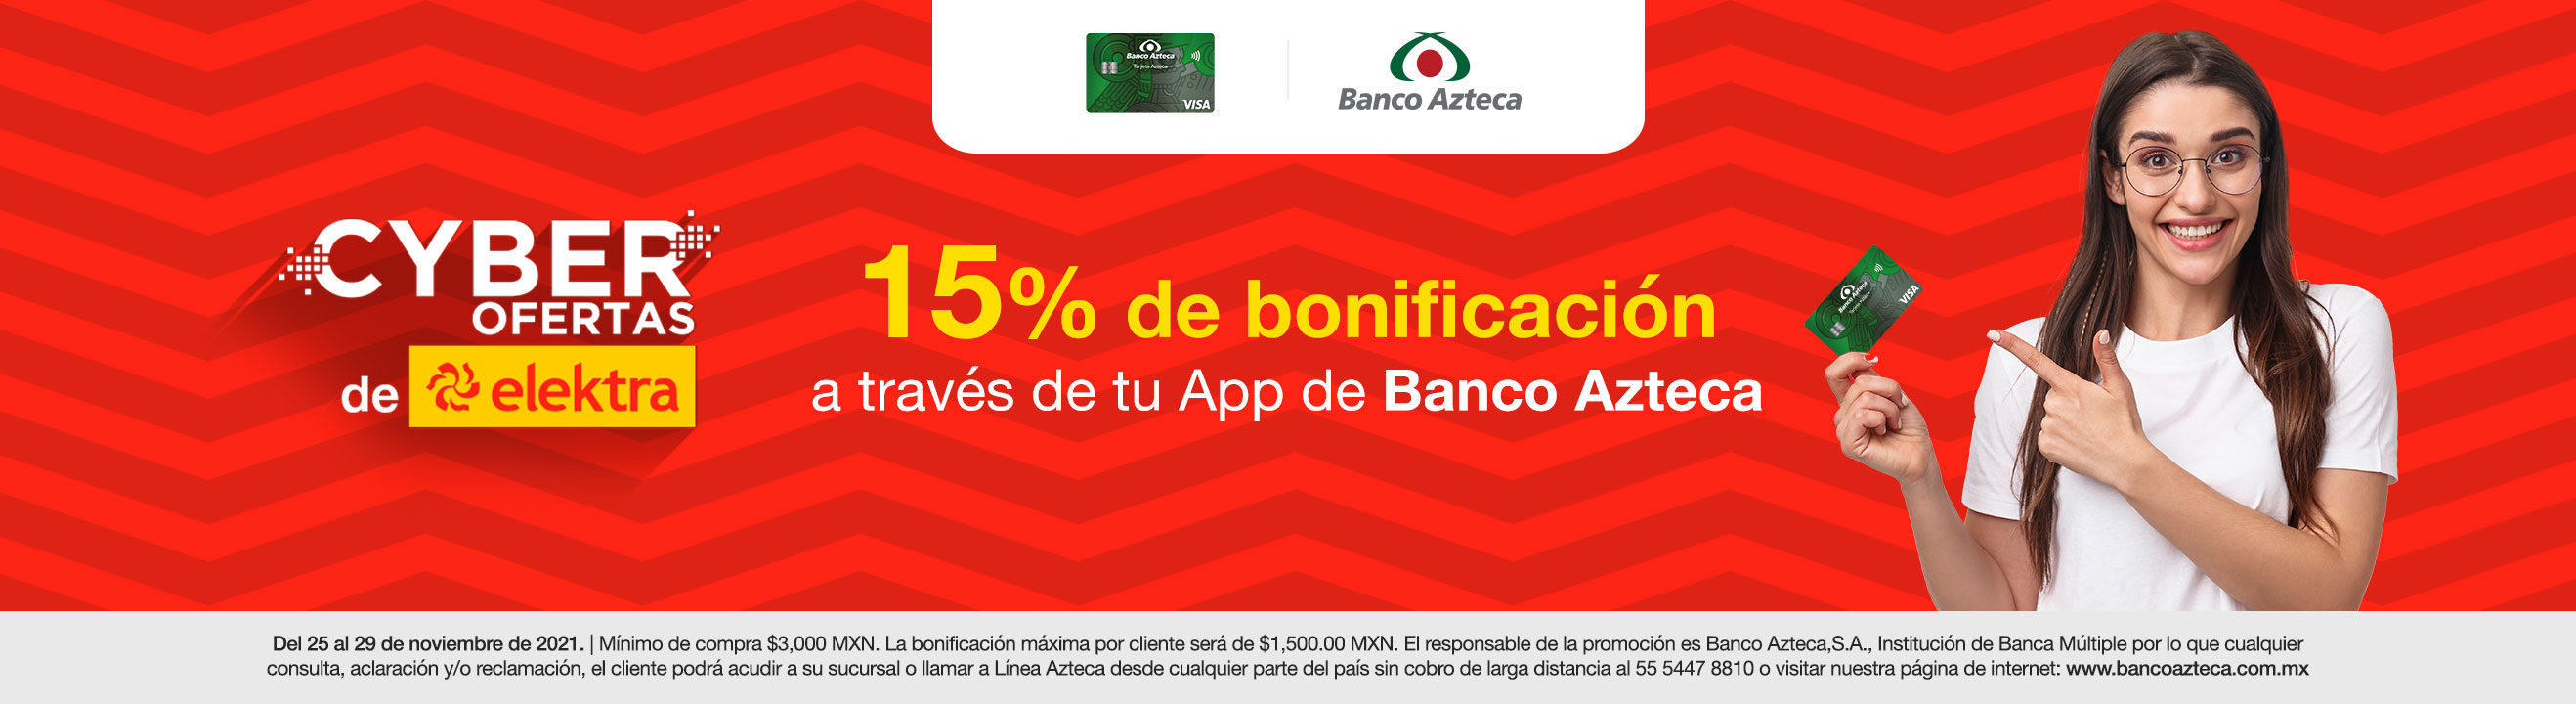 Promociones Banco Azteca